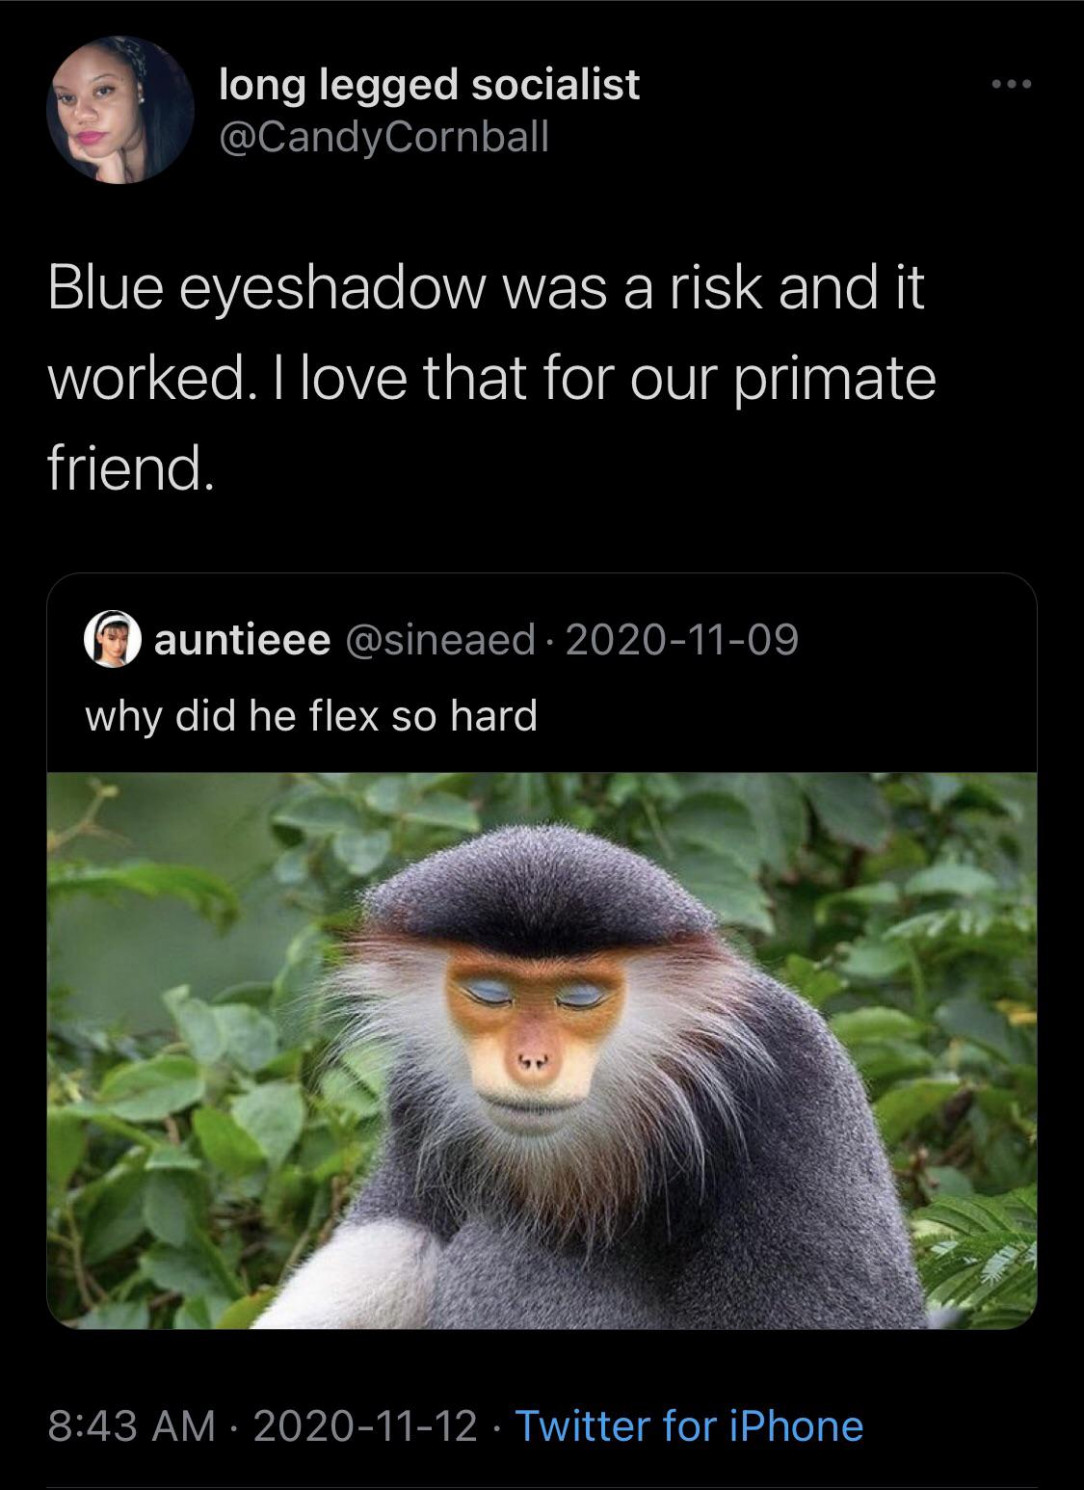 Flexing the blue eyeshadow